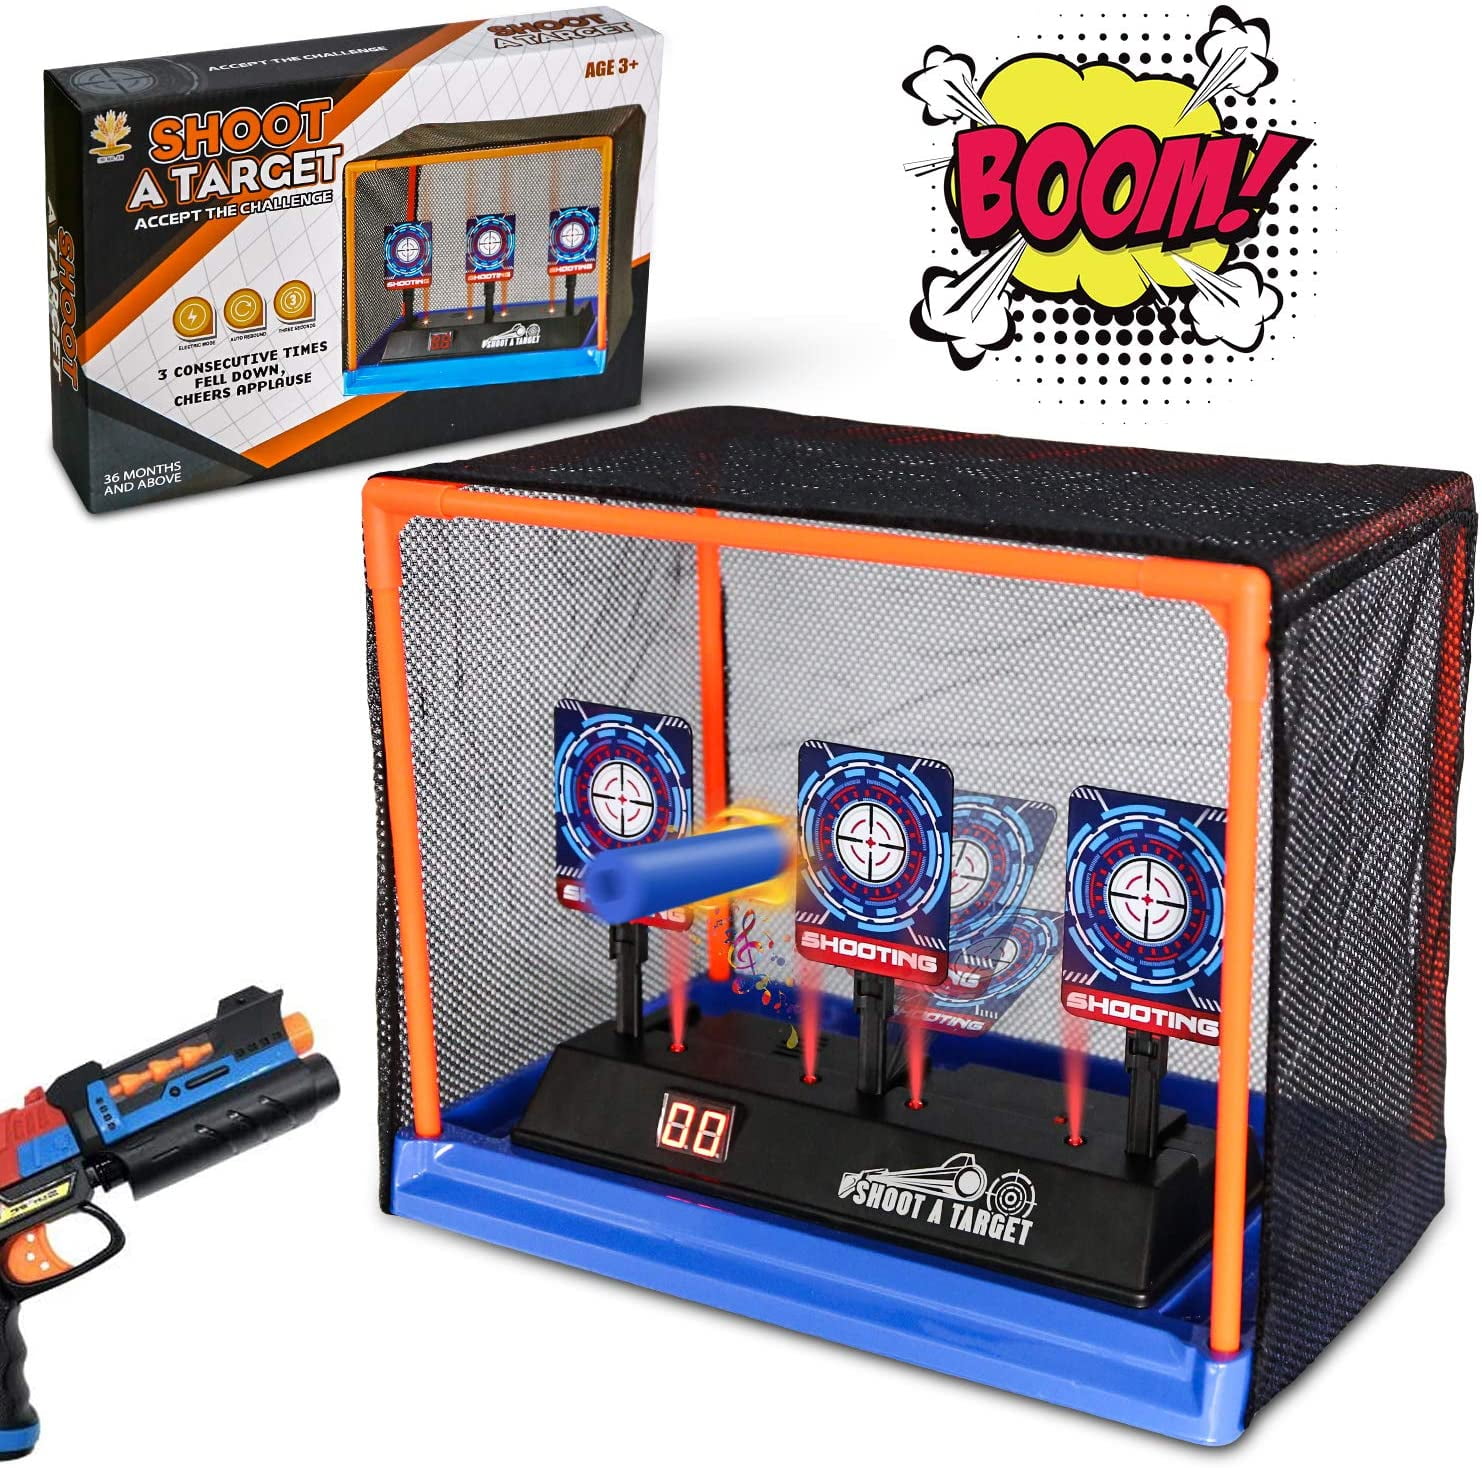 Electric Scoring Auto Reset Shooting Digital Target for Game Gun Toy Kids Gift U 